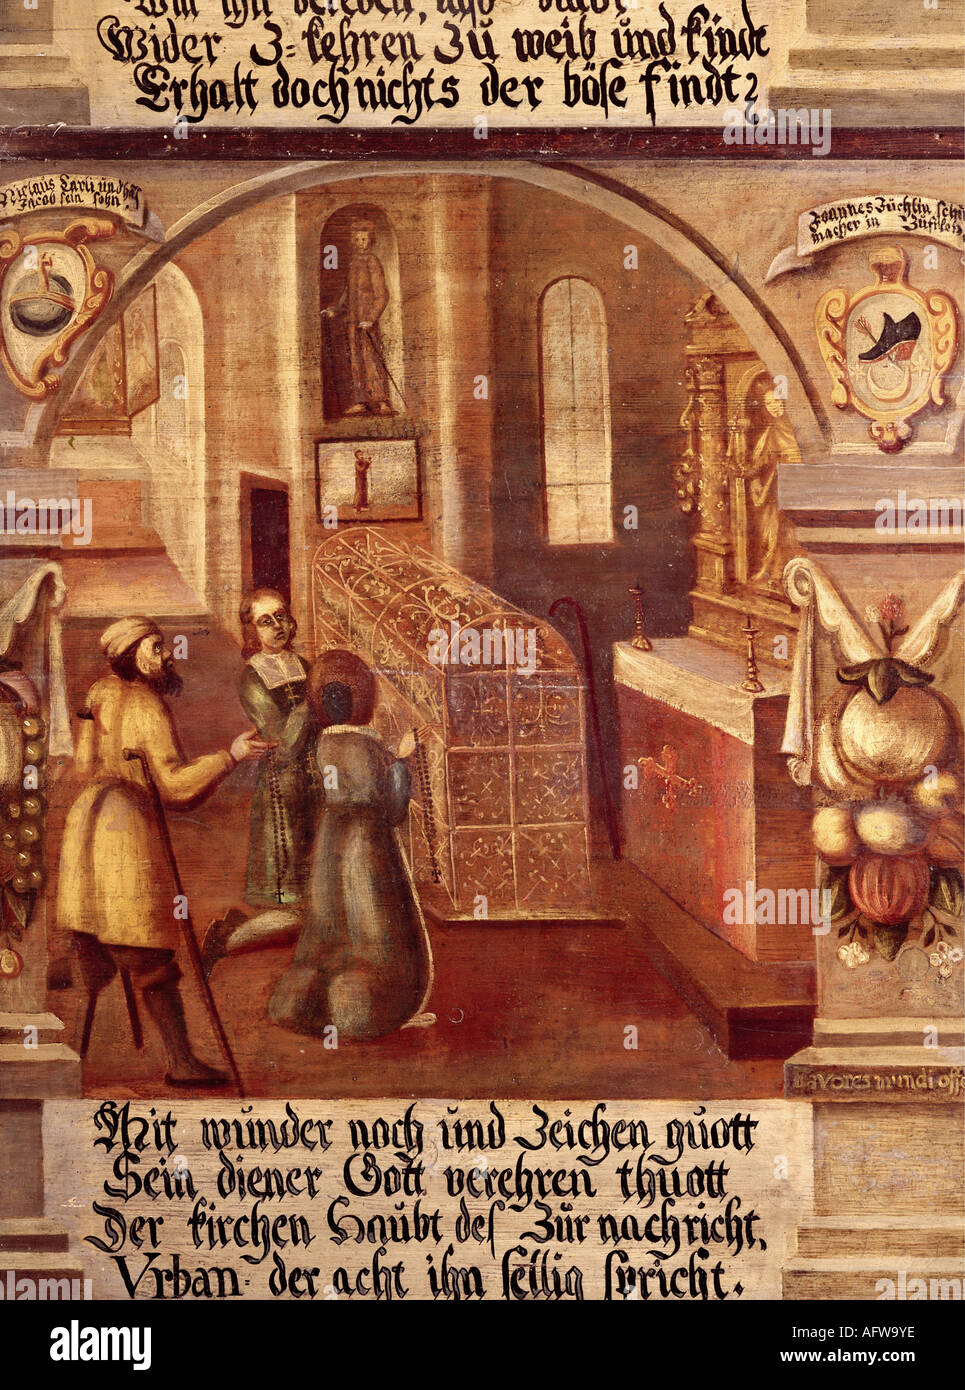 Nikolaus von Flue, 1417 - 21.3.1487, Schweizer Einsiedler, Askese, Mystiker, Heiliger, Tod, Gemälde, 1677, Emmauskapelle, Bremgarten, Stockfoto